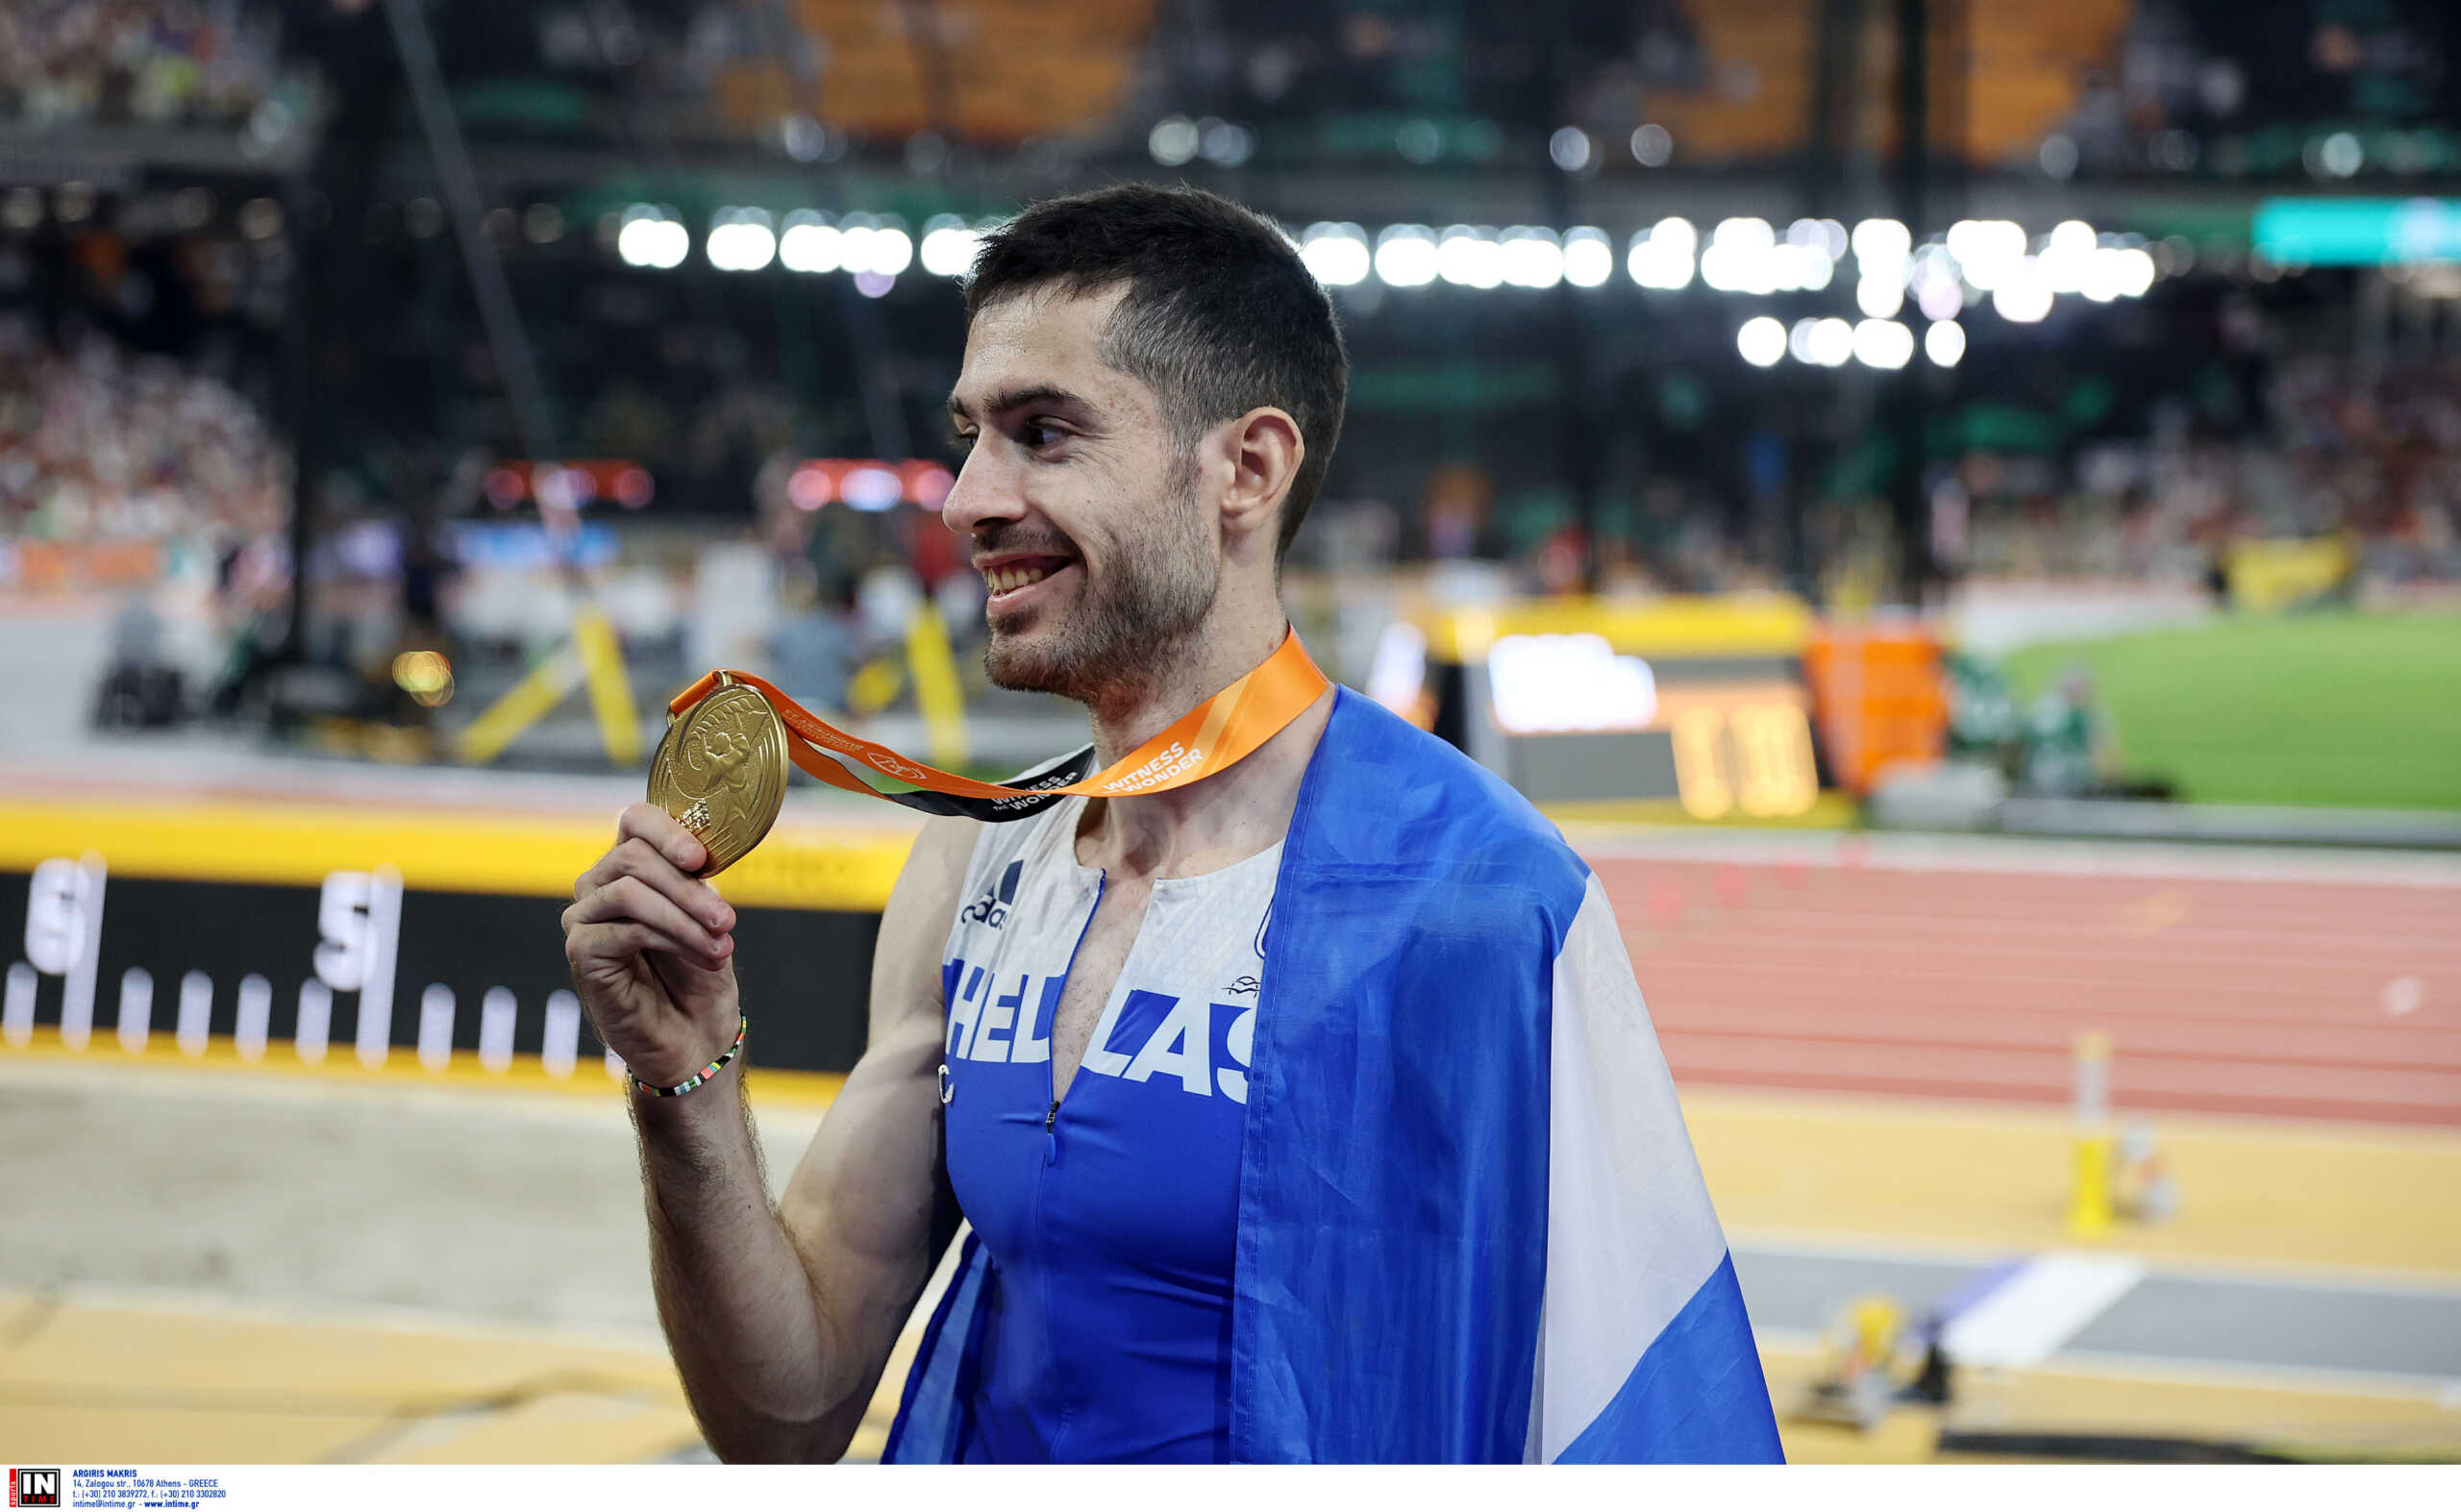 Ο Μίλτος Τεντόγλου κατέκτησε το 6ο χρυσό μετάλλιο στην ιστορία της Ελλάδας σε παγκόσμια πρωταθλήματα στίβου